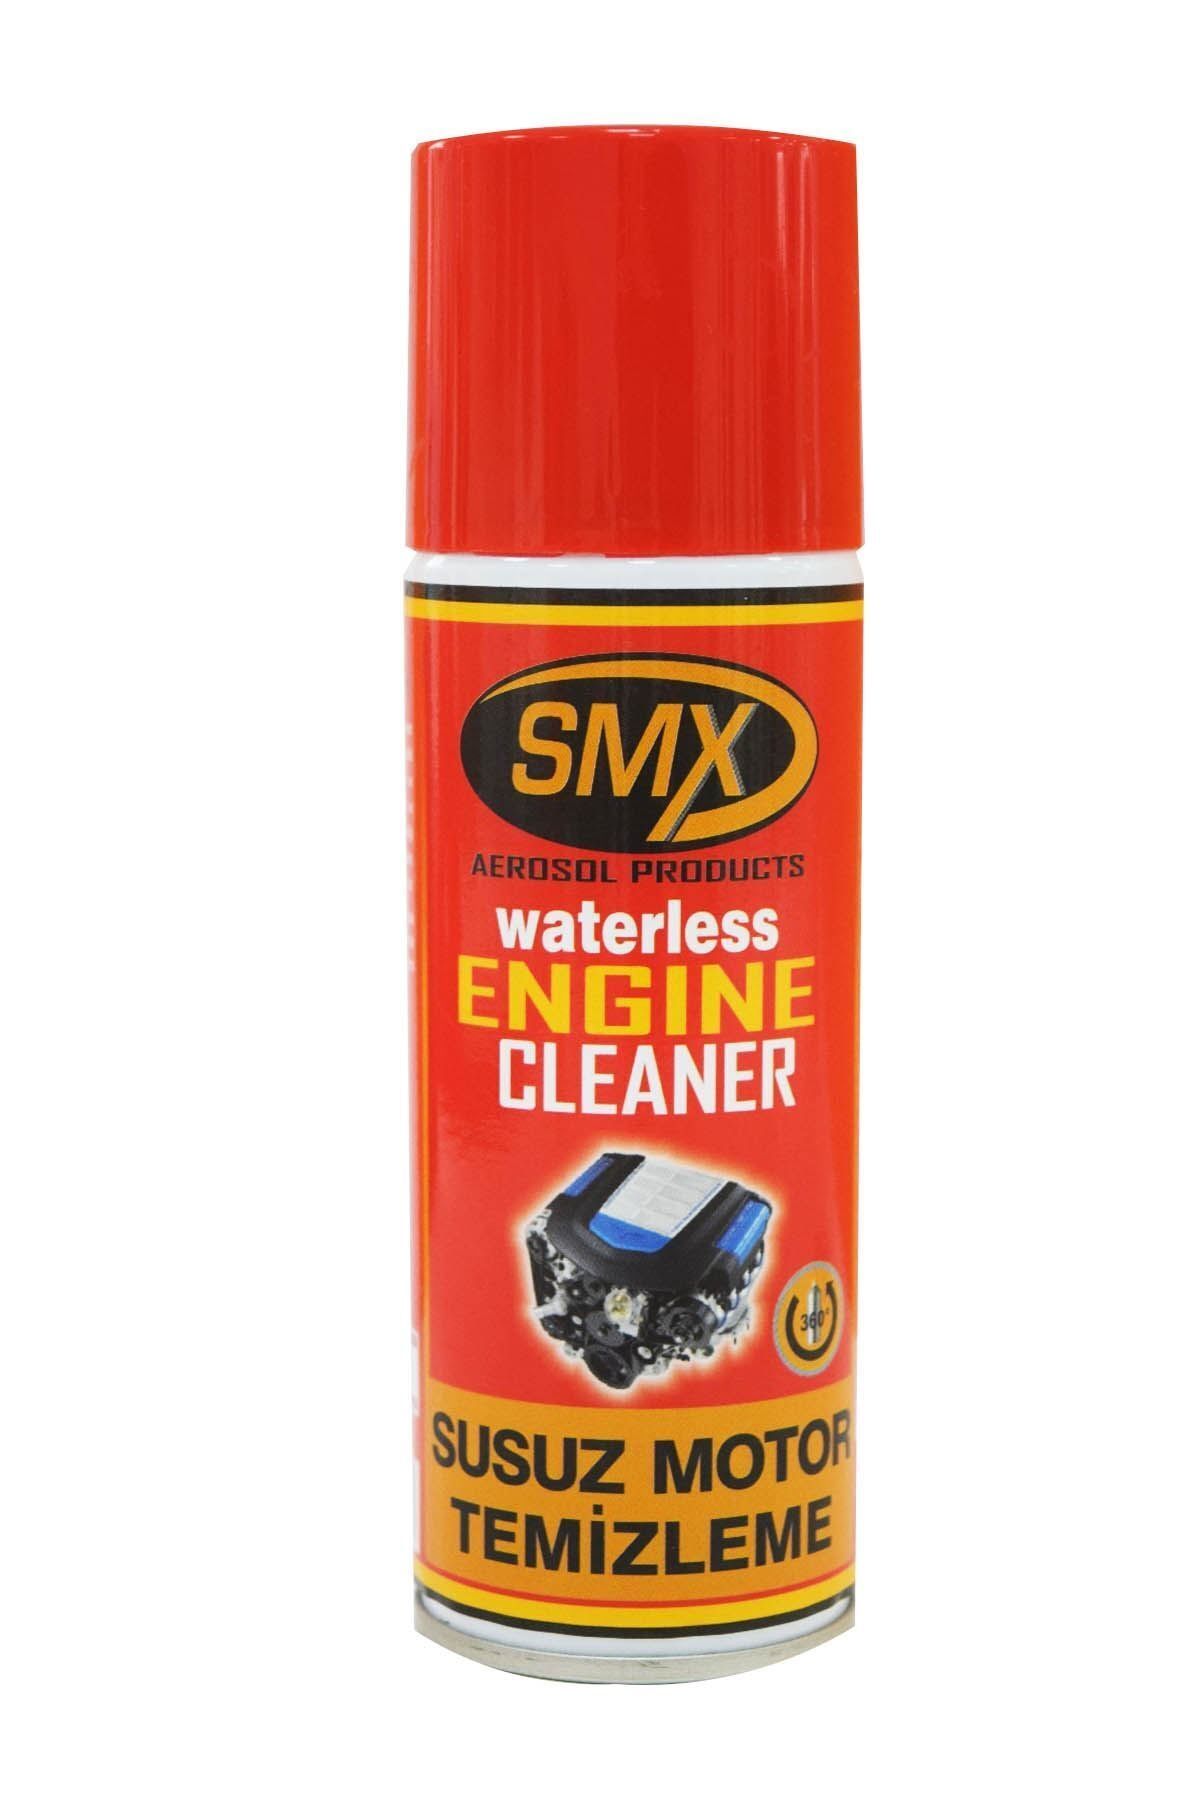 SMX Susuz Motor Temizleme Spreyi 200 ml